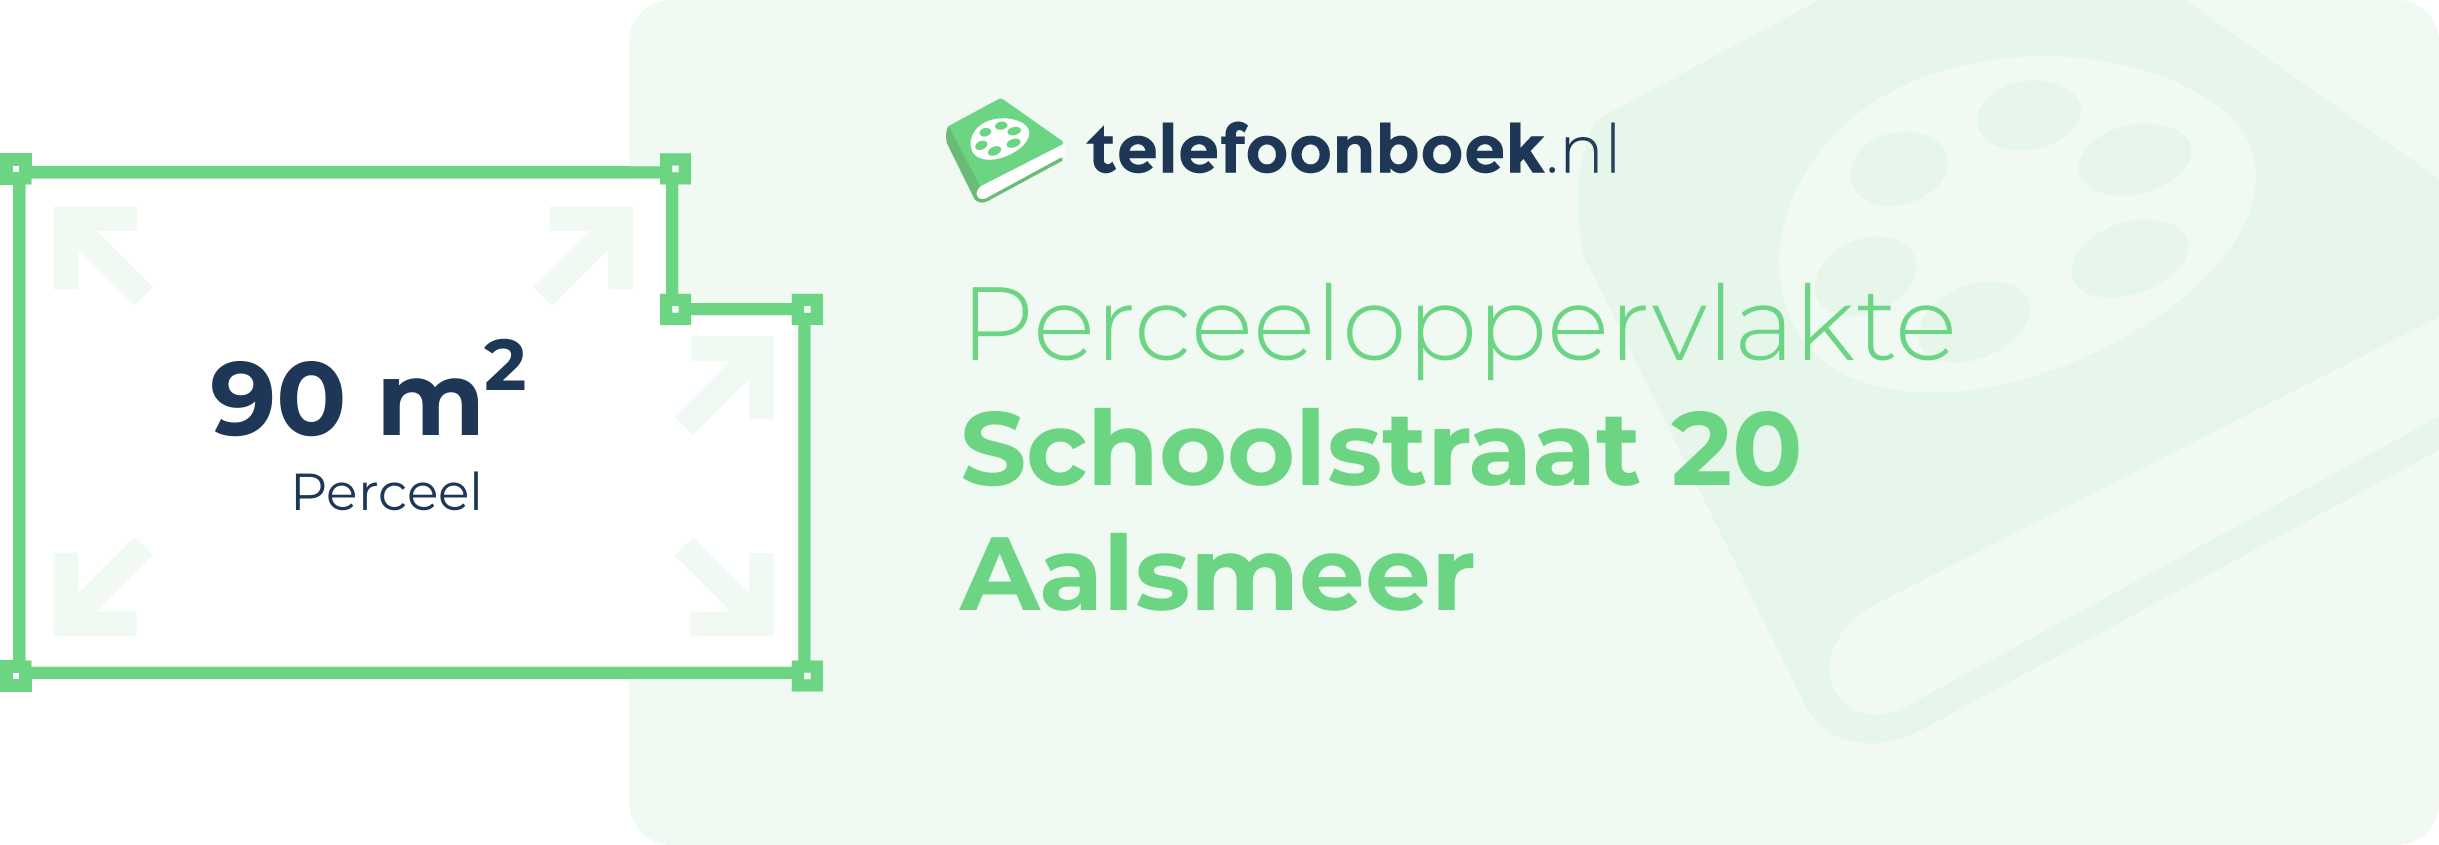 Perceeloppervlakte Schoolstraat 20 Aalsmeer